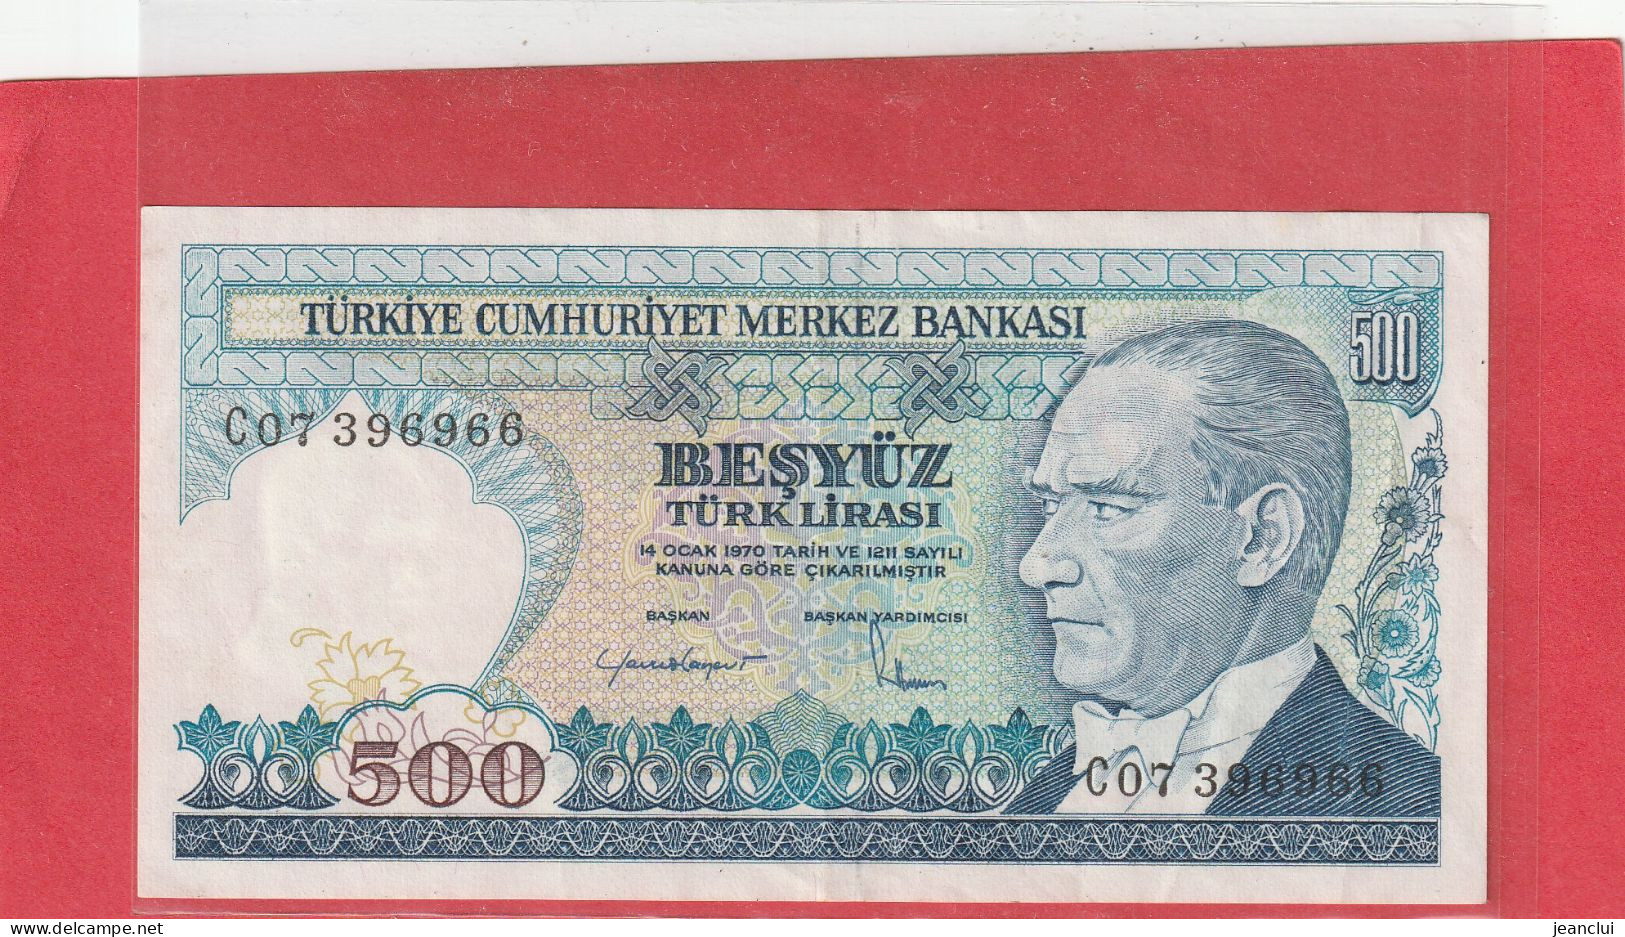 TURKIYE CUMHURIYET MERKEZ BANKASI . 500 LIRA . 14 OCAK 1970  . N°  C 07396966 .  2 SCANNES  .  BEL ETAT - Turkey